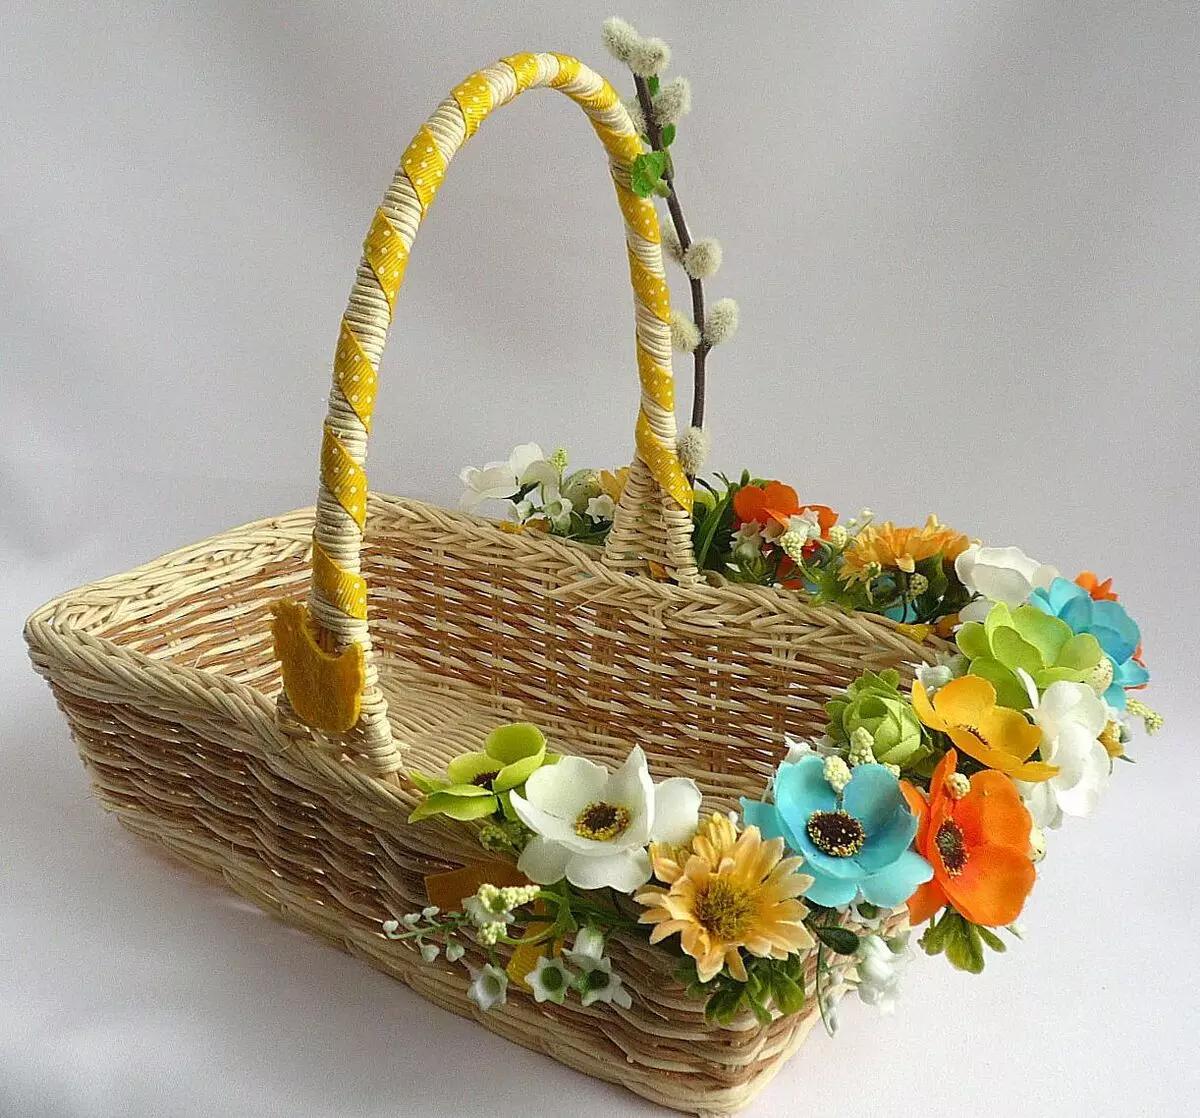 Baskets Paskah di pedalaman [produksi sareng panempatan]